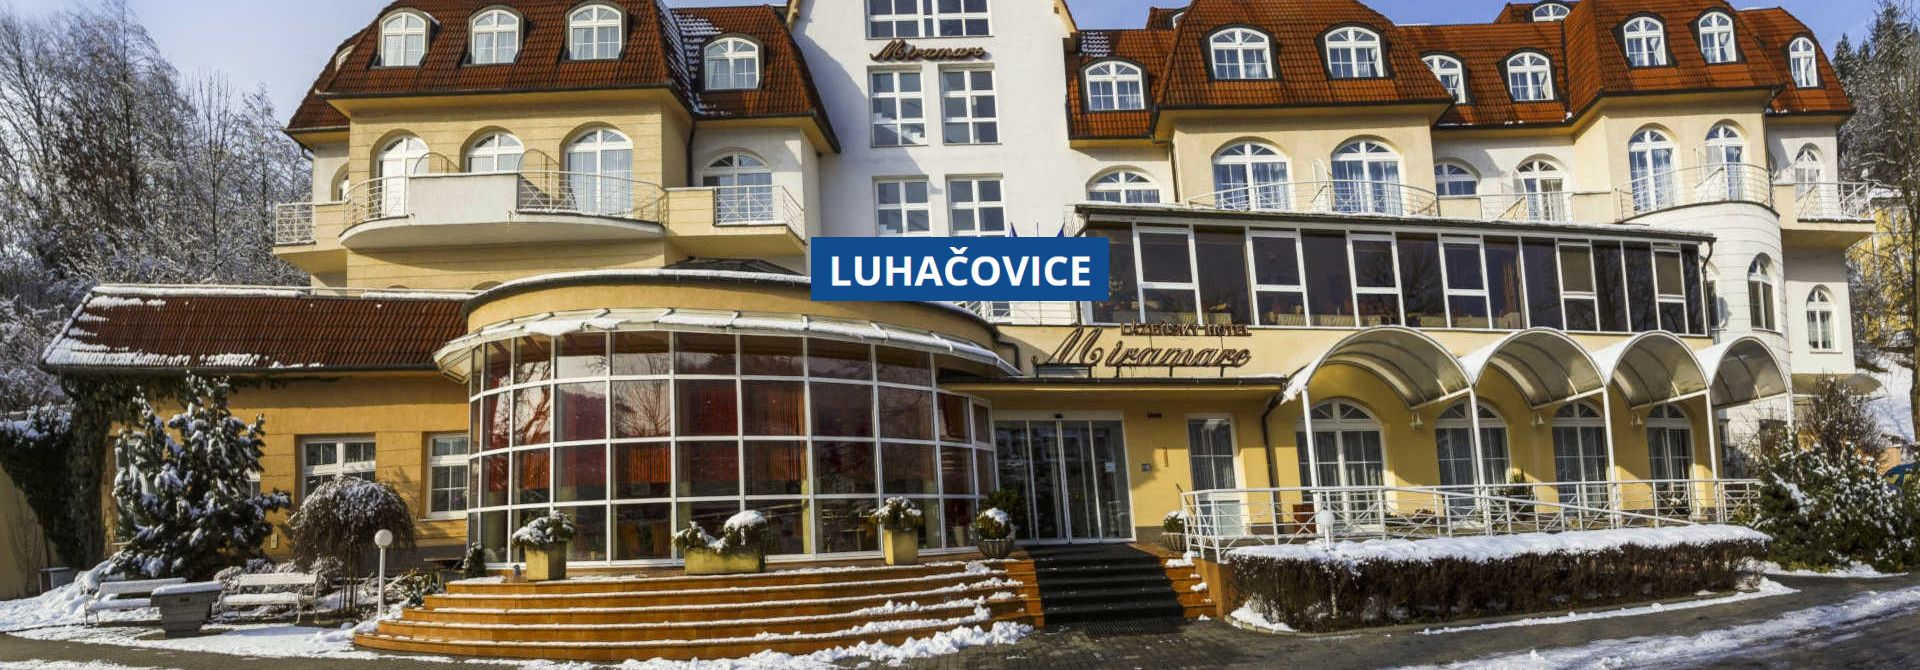 Lázeňský hotely MIRAMARE Luhačovice